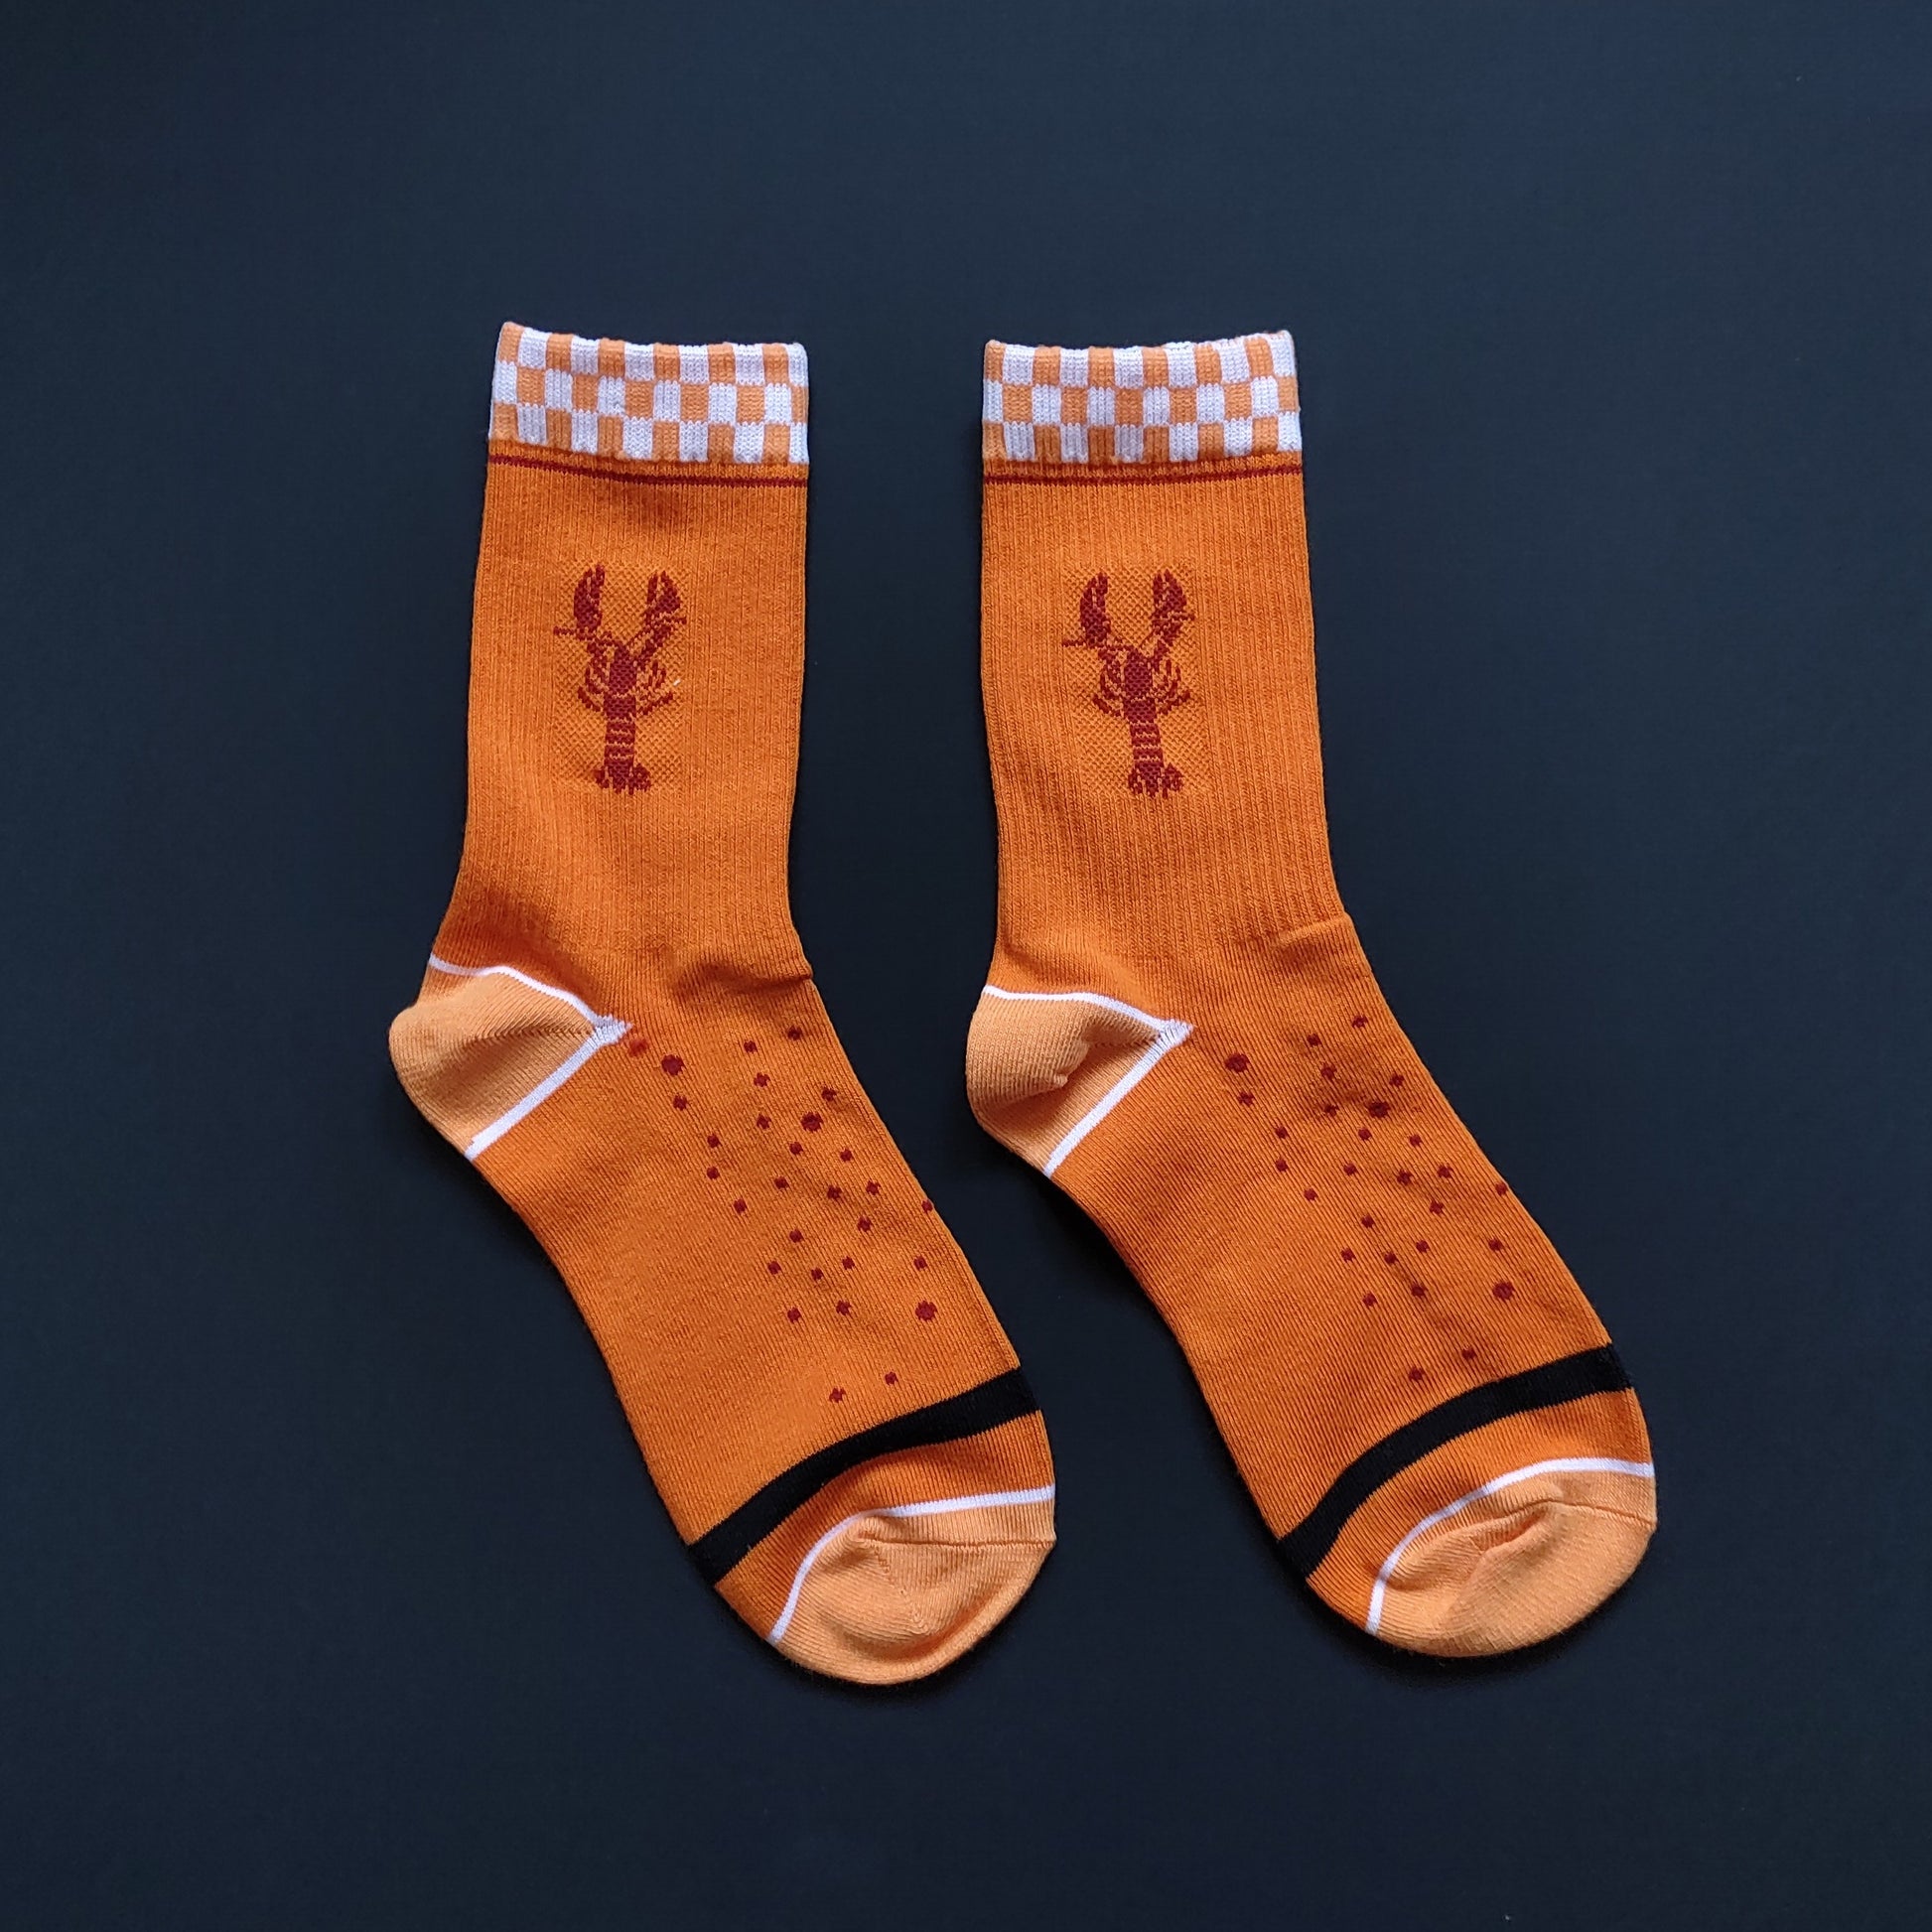 Lobster Socks – cactus socks